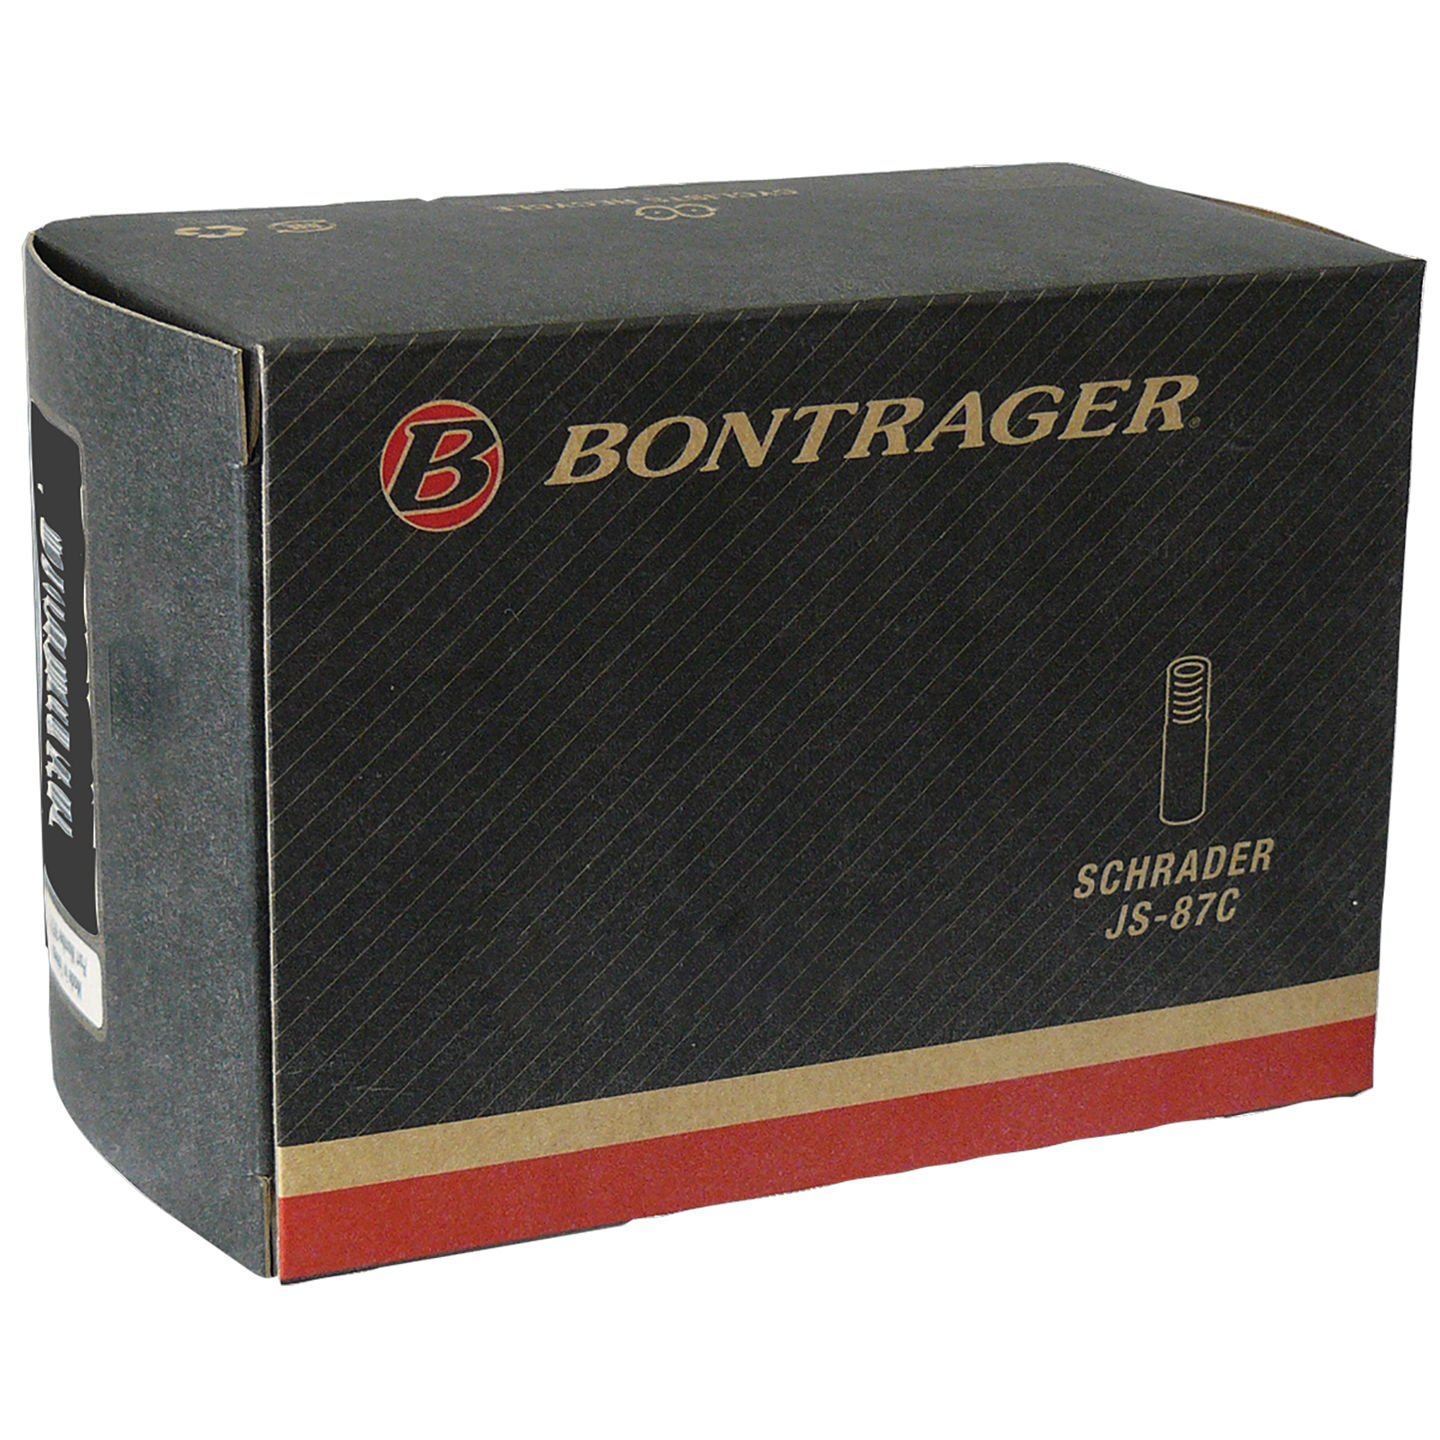 Камера велосипедная Bontrager Standard, 26x1.25-1.75, Presta 36mm, TCG-88449 камера велосипедная bontrager sl 26 1 95 2 125 pv вело tcg 62254